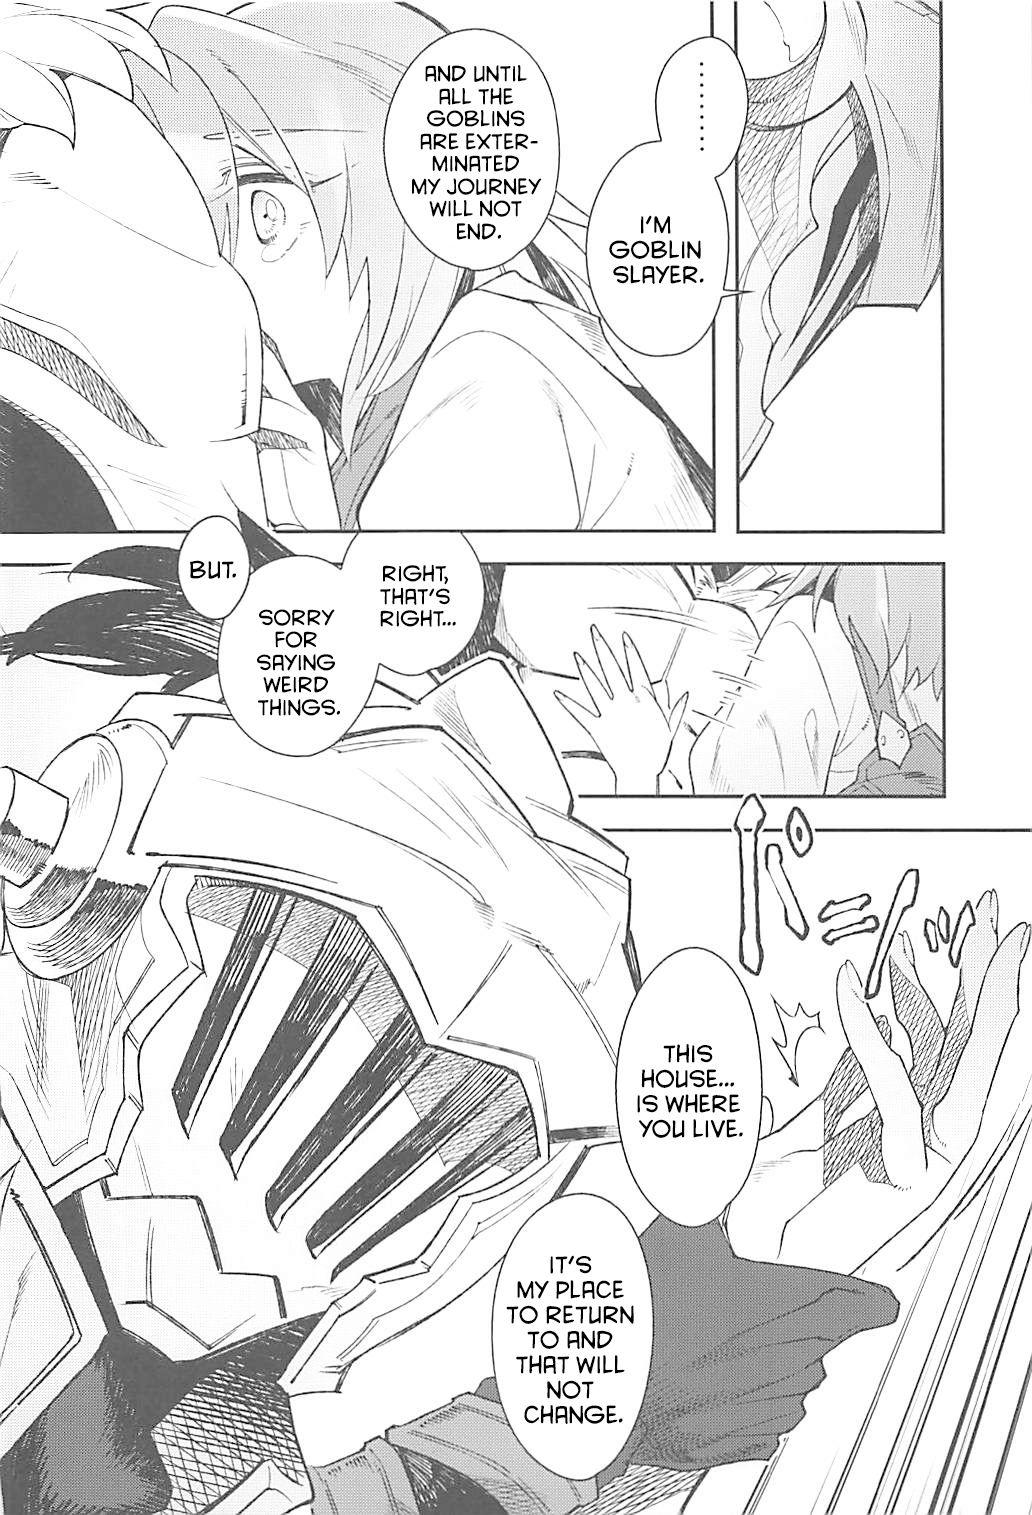 Hot Harvest Moon - Goblin slayer Exibicionismo - Page 11